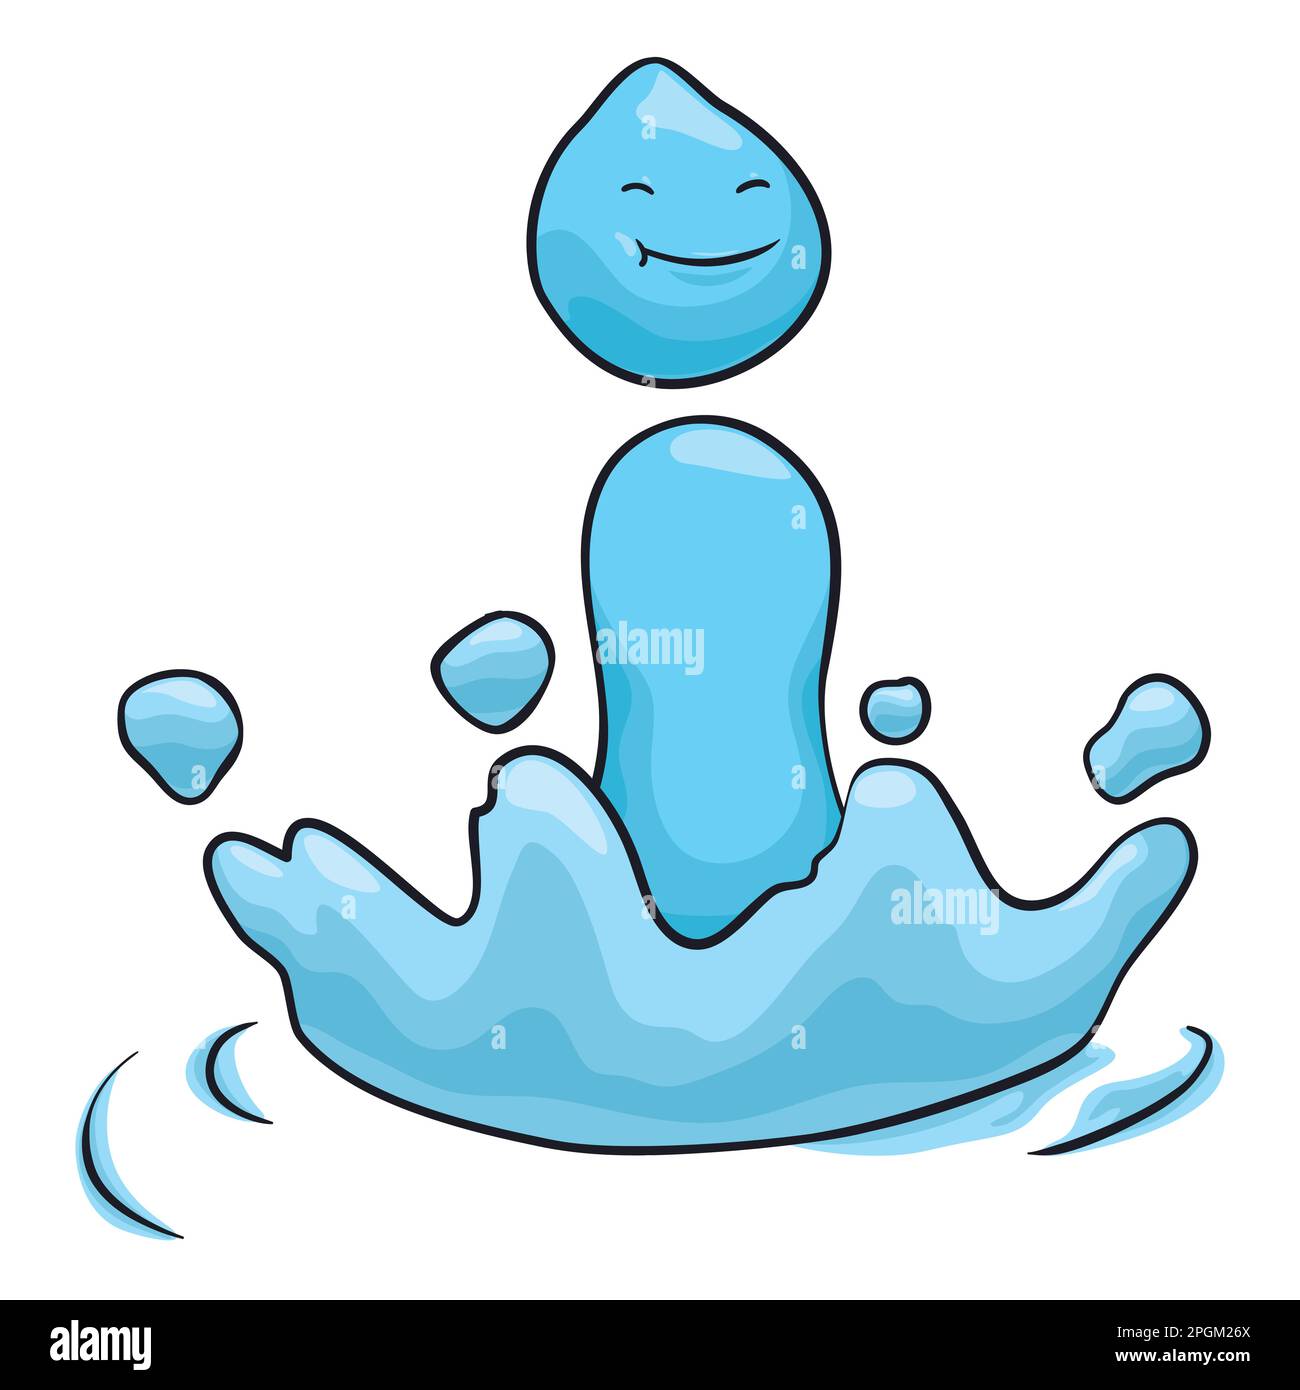 Il carattere blu prodotto dell'impatto di una goccia, con un gesto sorridente, alcuni schizzi e increspature. Design in stile cartone animato. Illustrazione Vettoriale